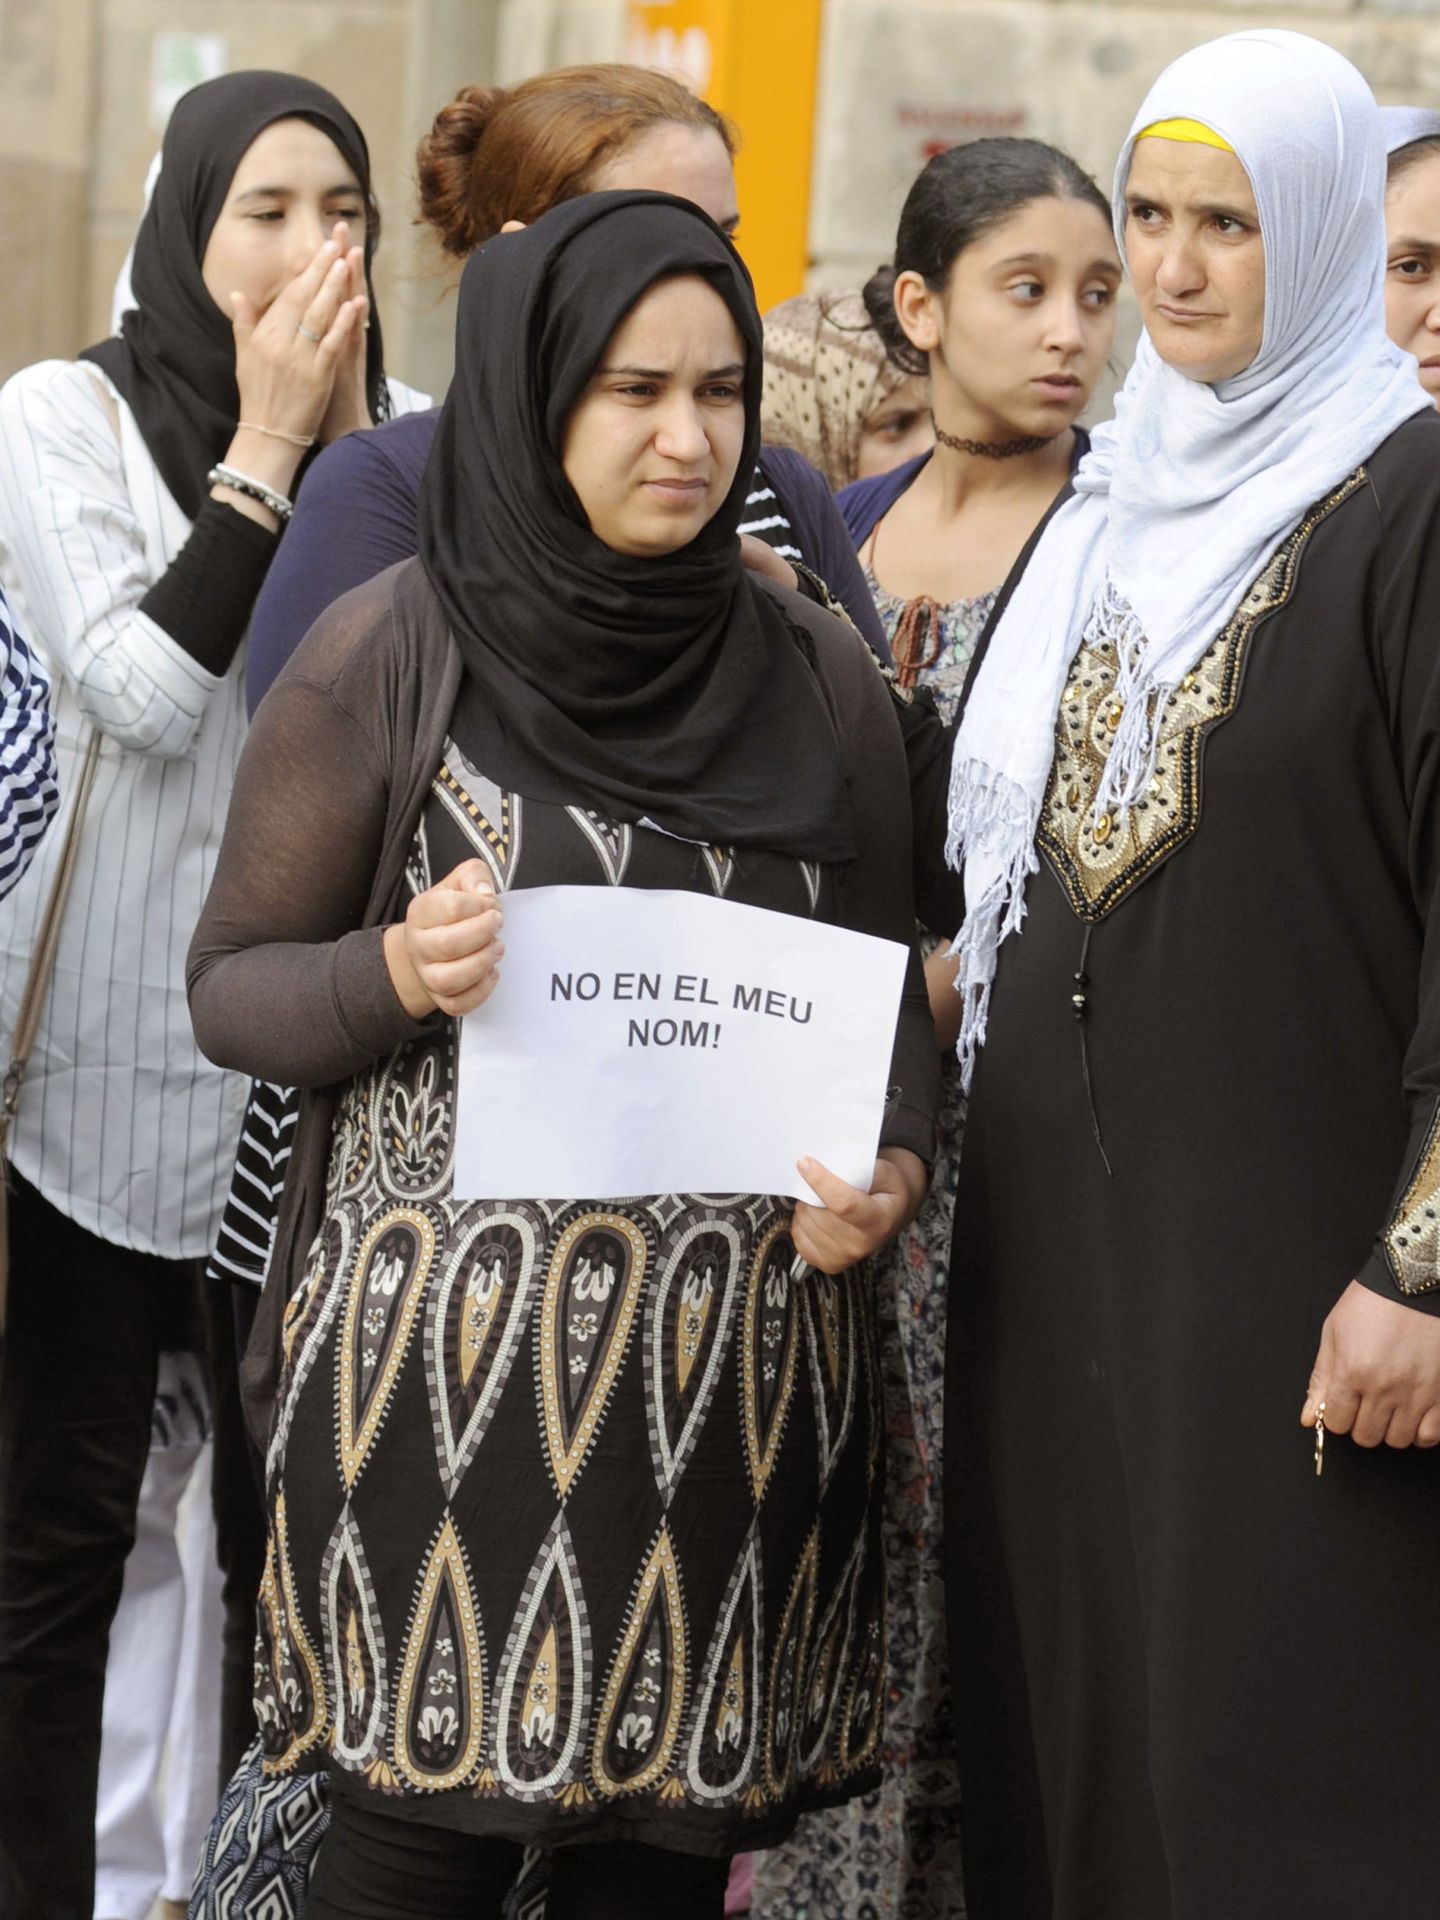 GRA337. RIPOLL (GIRONA), 19 08 2017.- Un grupo de mujeres muestran carteles que dicen 'No en mi nombre' durante el minuto de silencio que la comunidad musulmana ha llevado a cabo esta tarde delante del Ayuntamiento de Ripoll en memoria de las víctimas de los atentados de Cataluña. EFE Robin Townsend